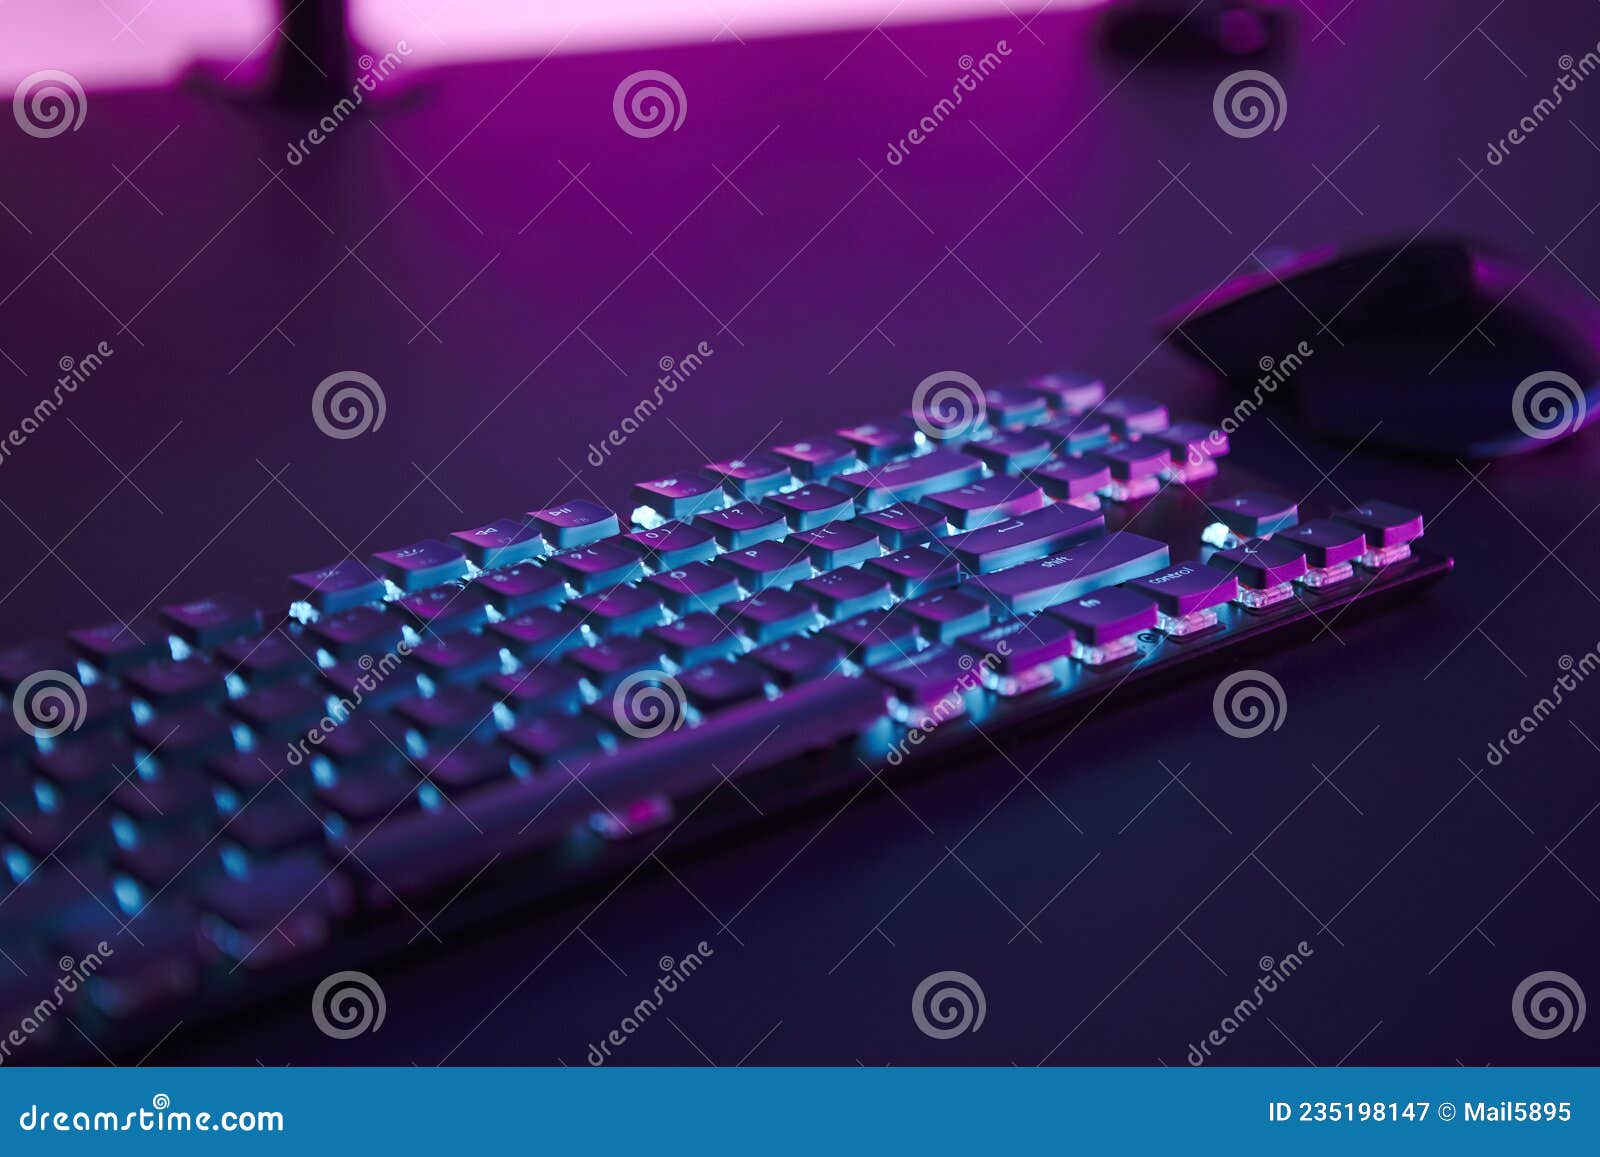 Khám phá chiếc bàn phím màu hồng tuyệt đẹp, được thiết kế đặc biệt để làm cho ngày học và công việc của bạn thêm phần năng động và tươi sáng. Hãy tận hưởng trải nghiệm gõ phím tuyệt vời cùng với màu sắc đầy sức sống của bàn phím này.